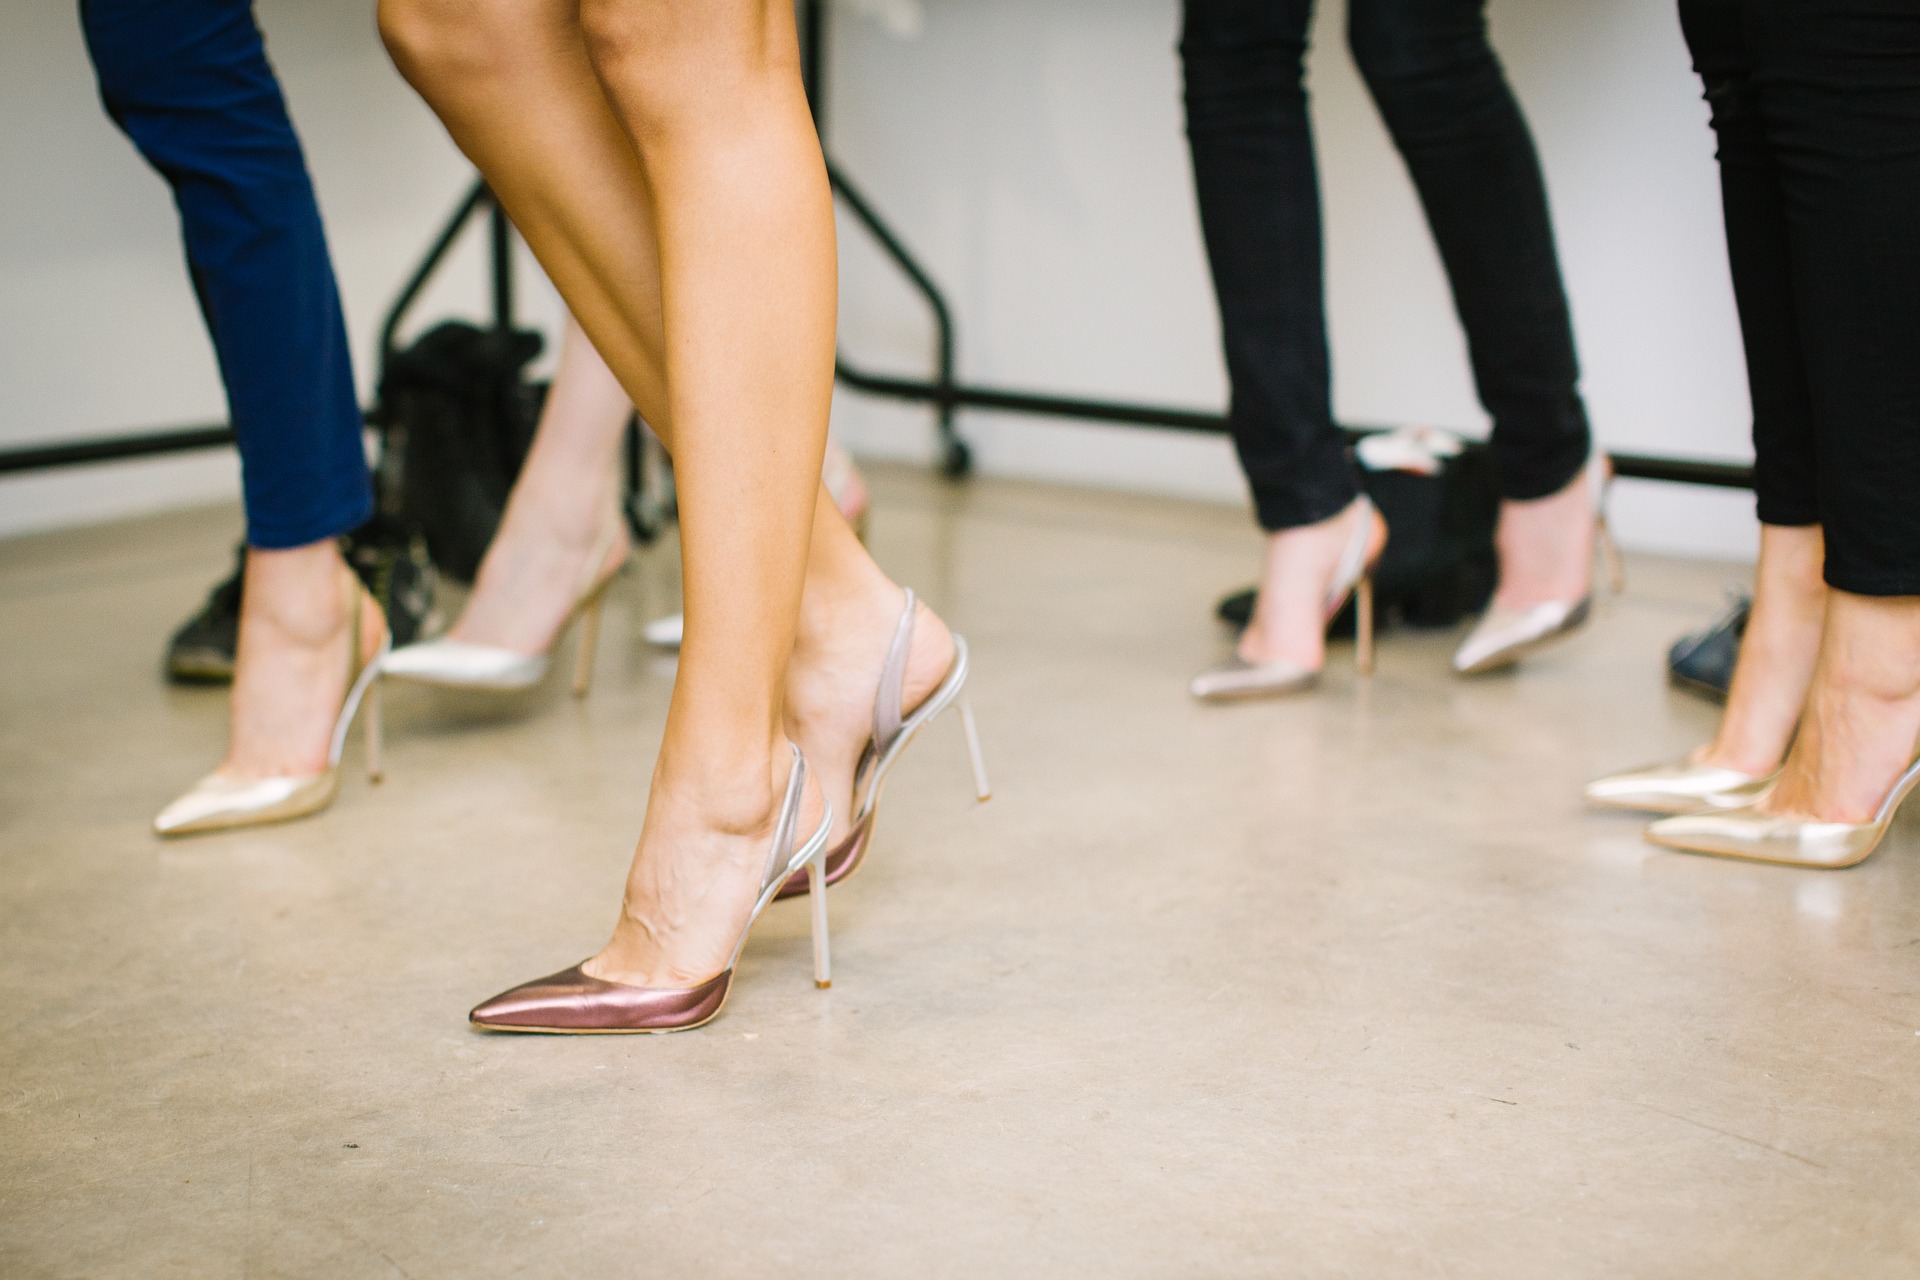 Scopri di più sull'articolo L’oggetto del desiderio femminile | storia delle scarpe con i tacchi